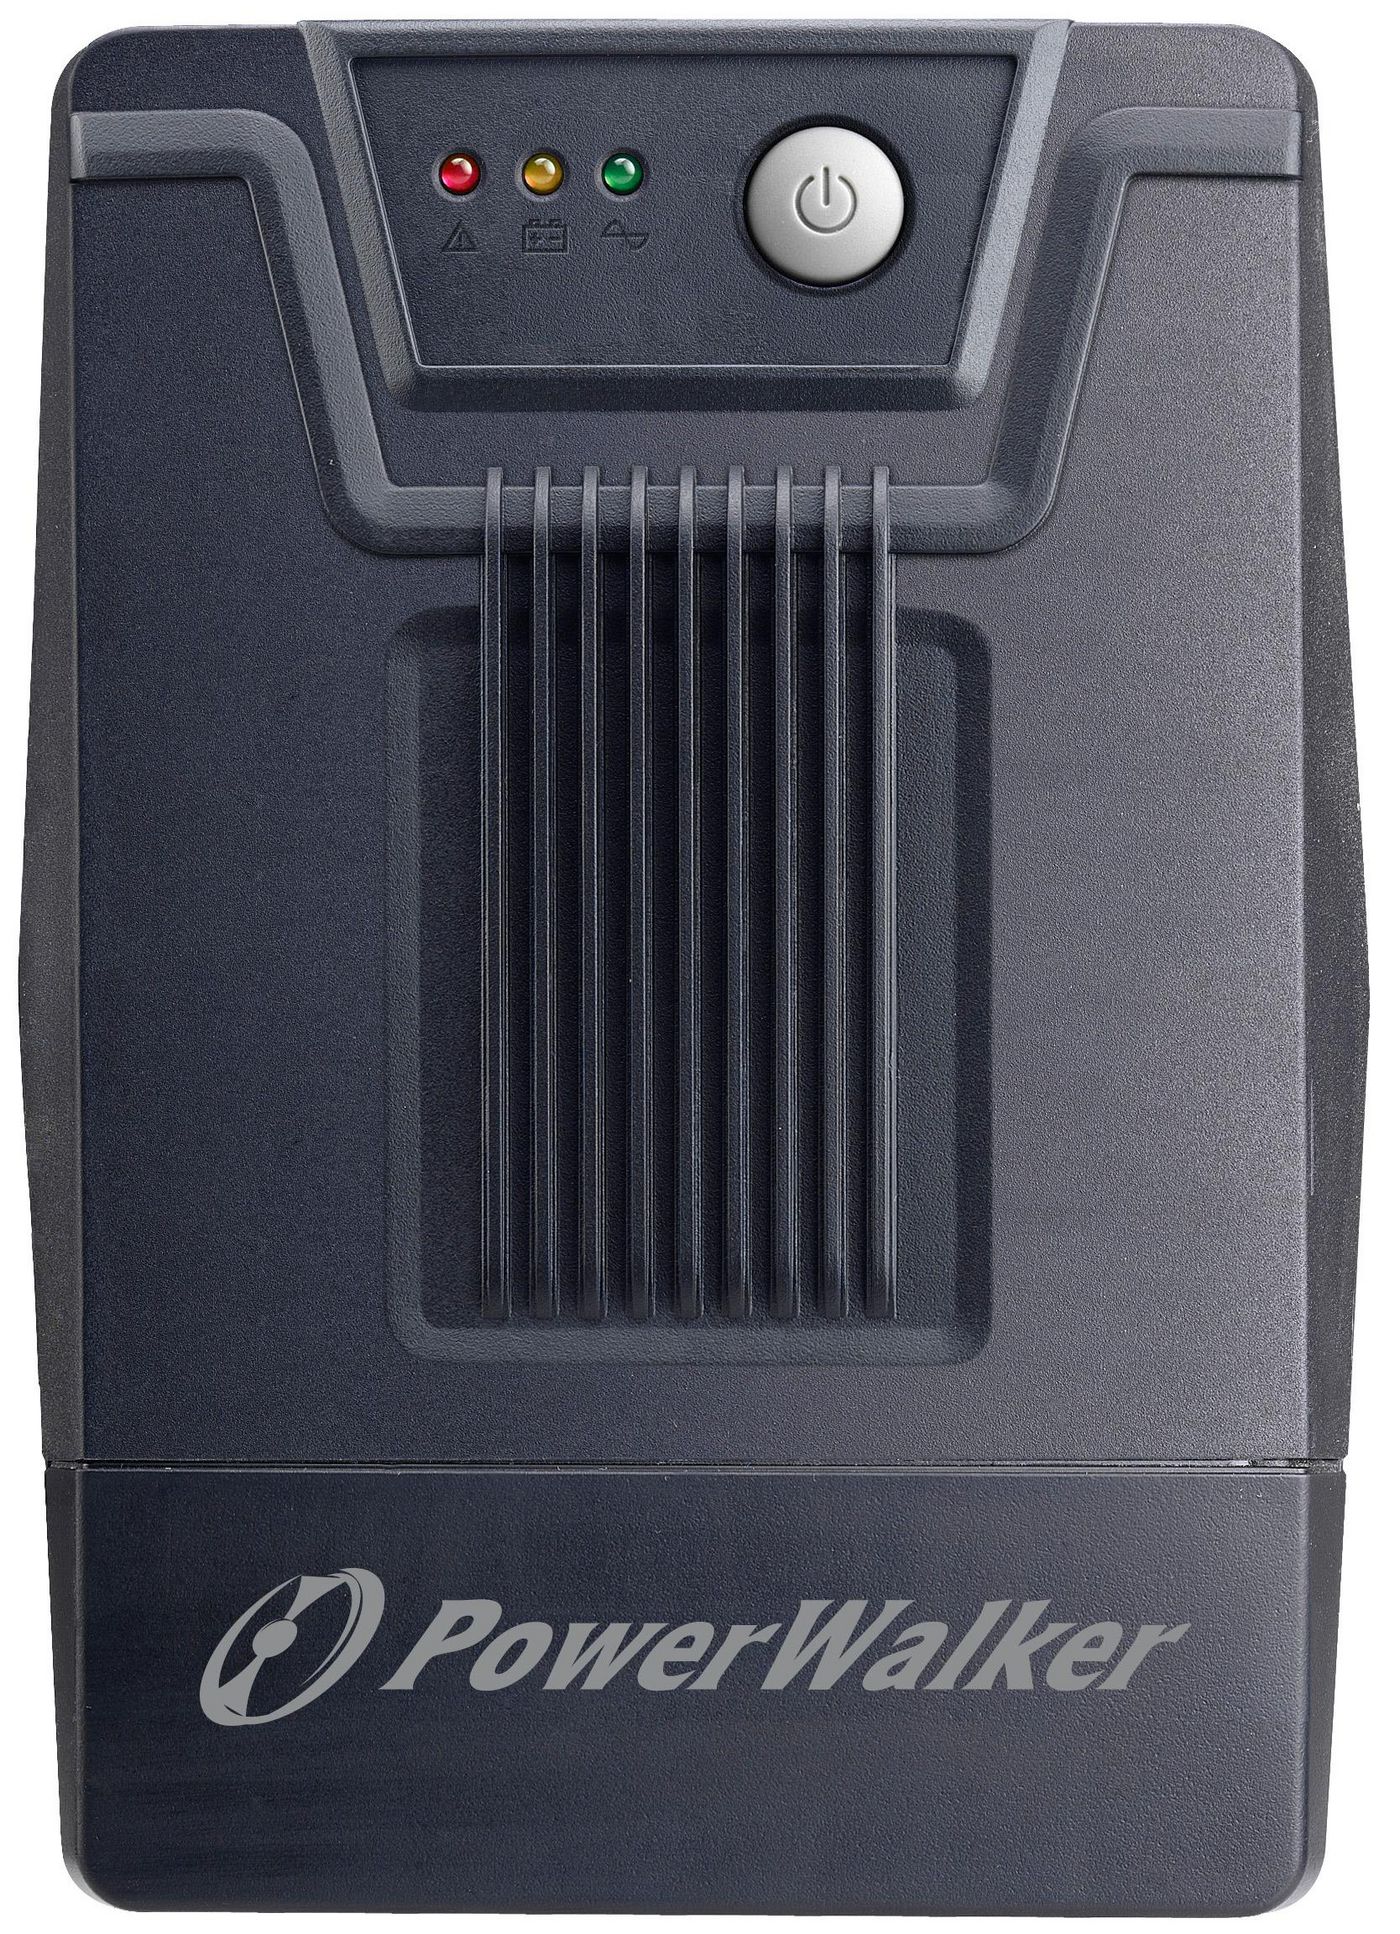 PowerWalker 10121027 VI 1500 SC Schuko 